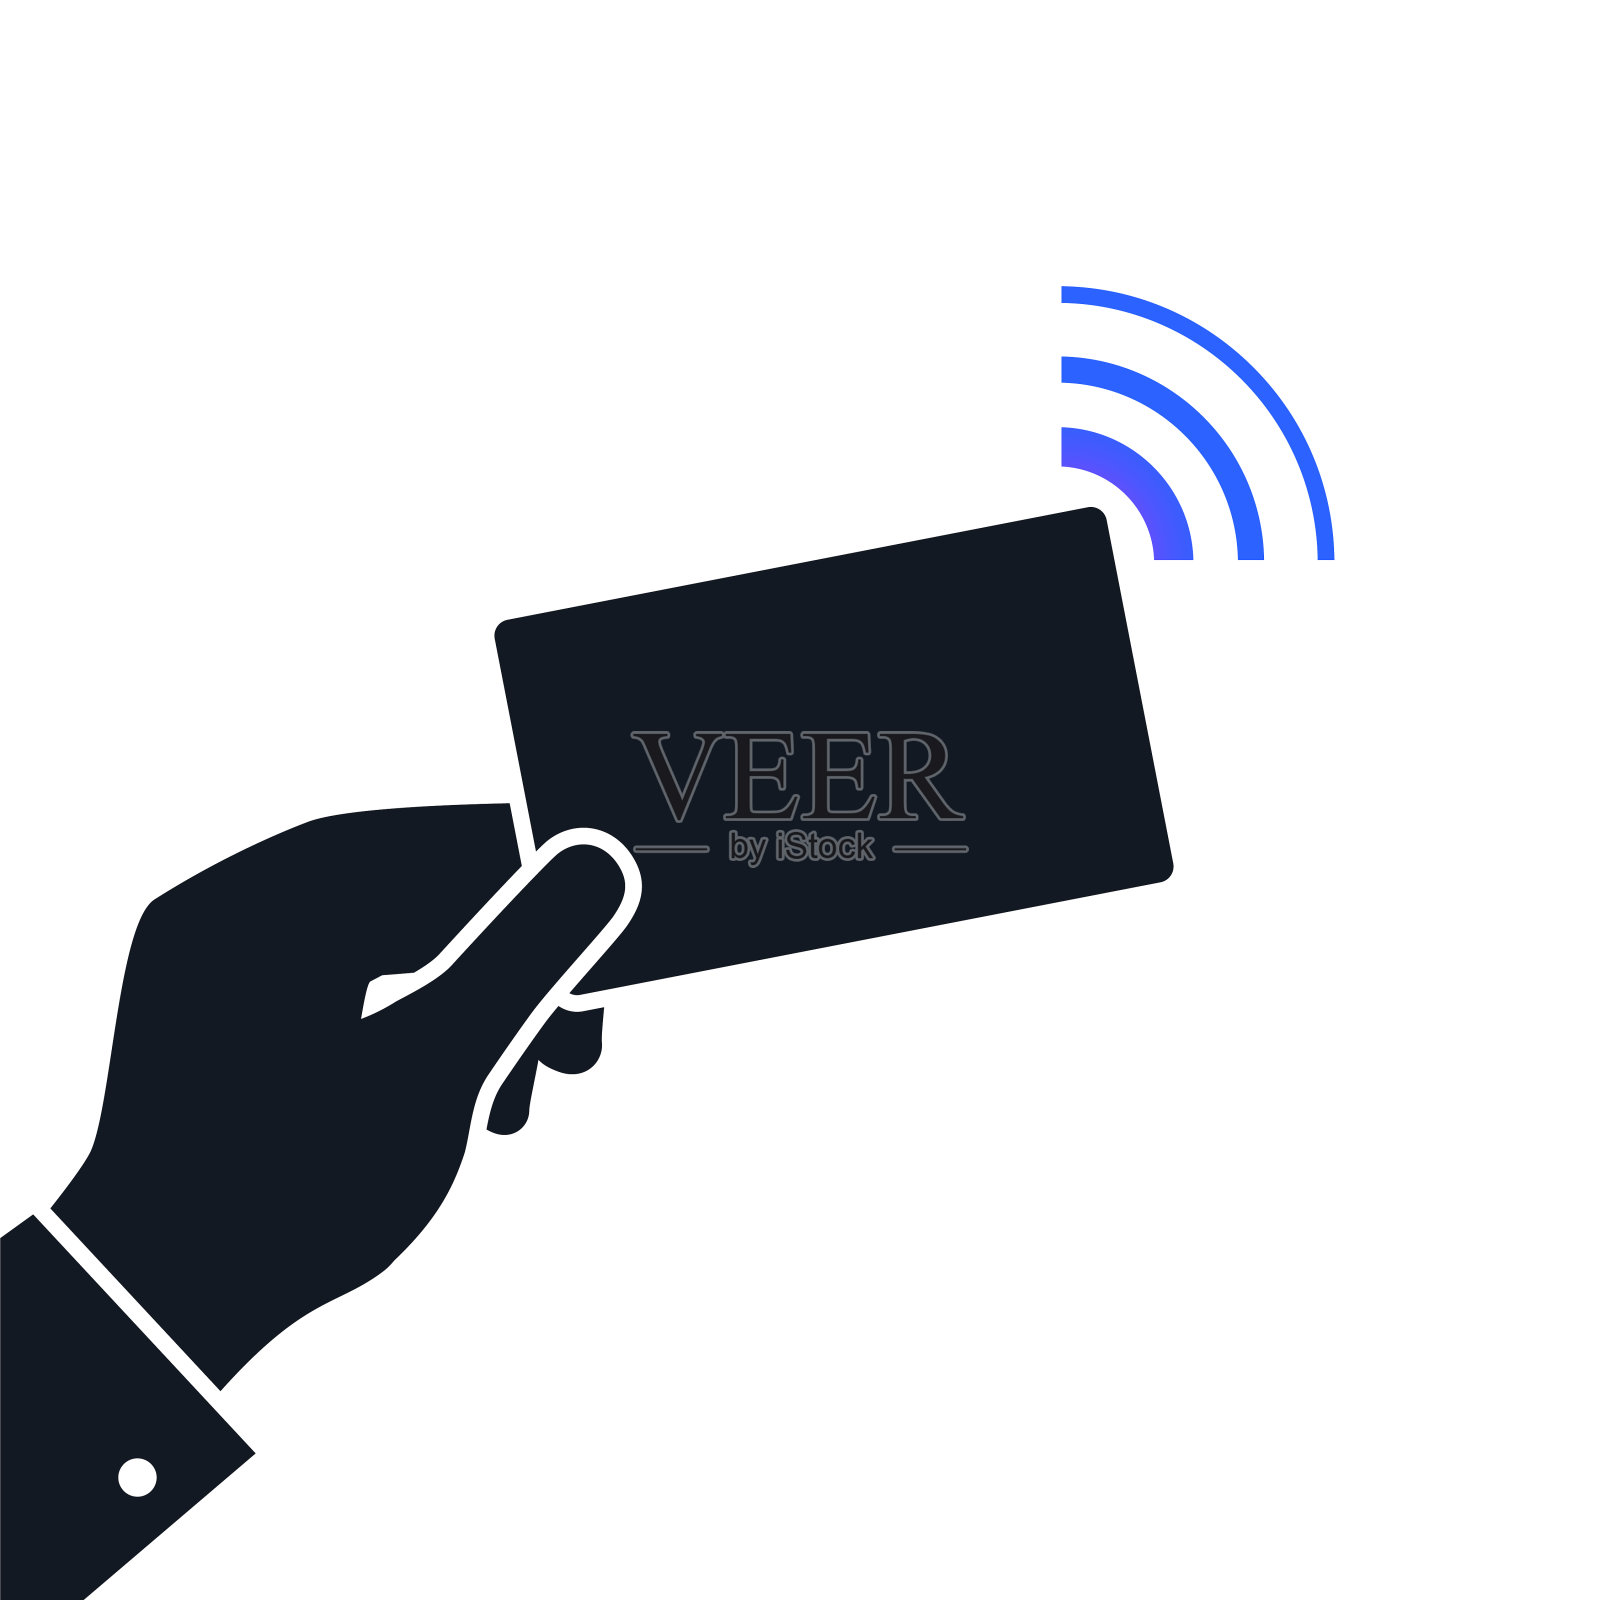 近场通信NFC概念图标。非接触式支付技术插画图片素材